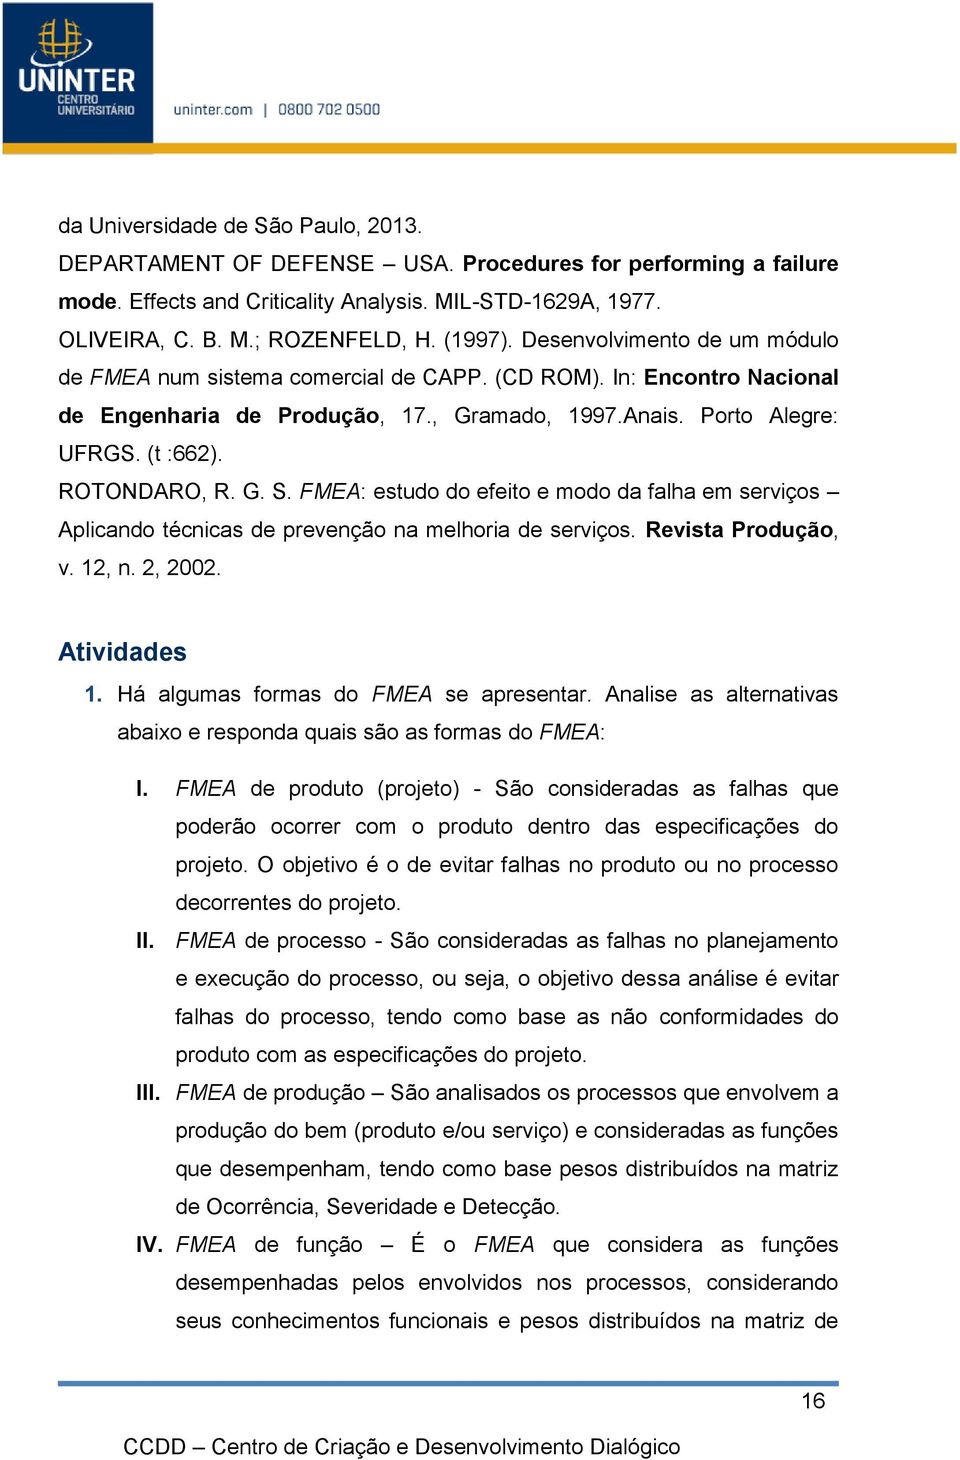 ROTONDARO, R. G. S. FMEA: estudo do efeito e modo da falha em serviços Aplicando técnicas de prevenção na melhoria de serviços. Revista Produção, v. 12, n. 2, 2002. Atividades 1.